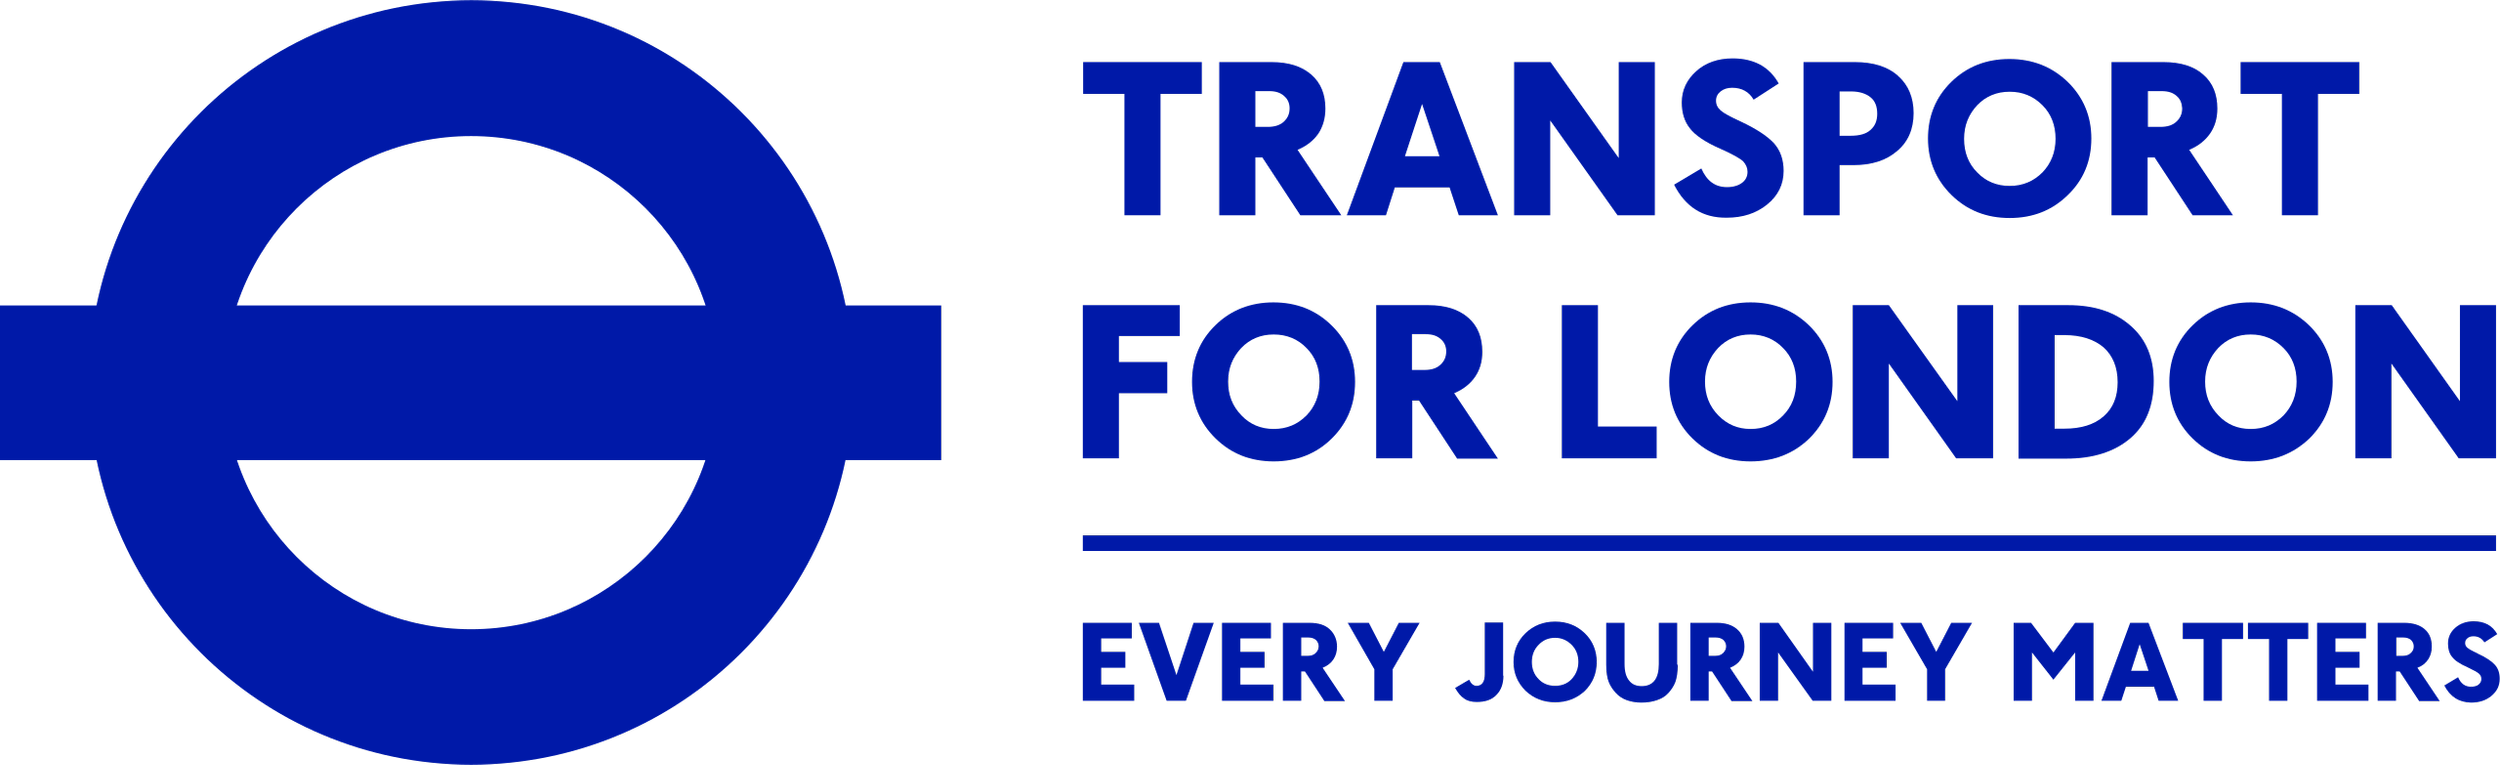 Transport_for_London_logo_(2013).svg.png